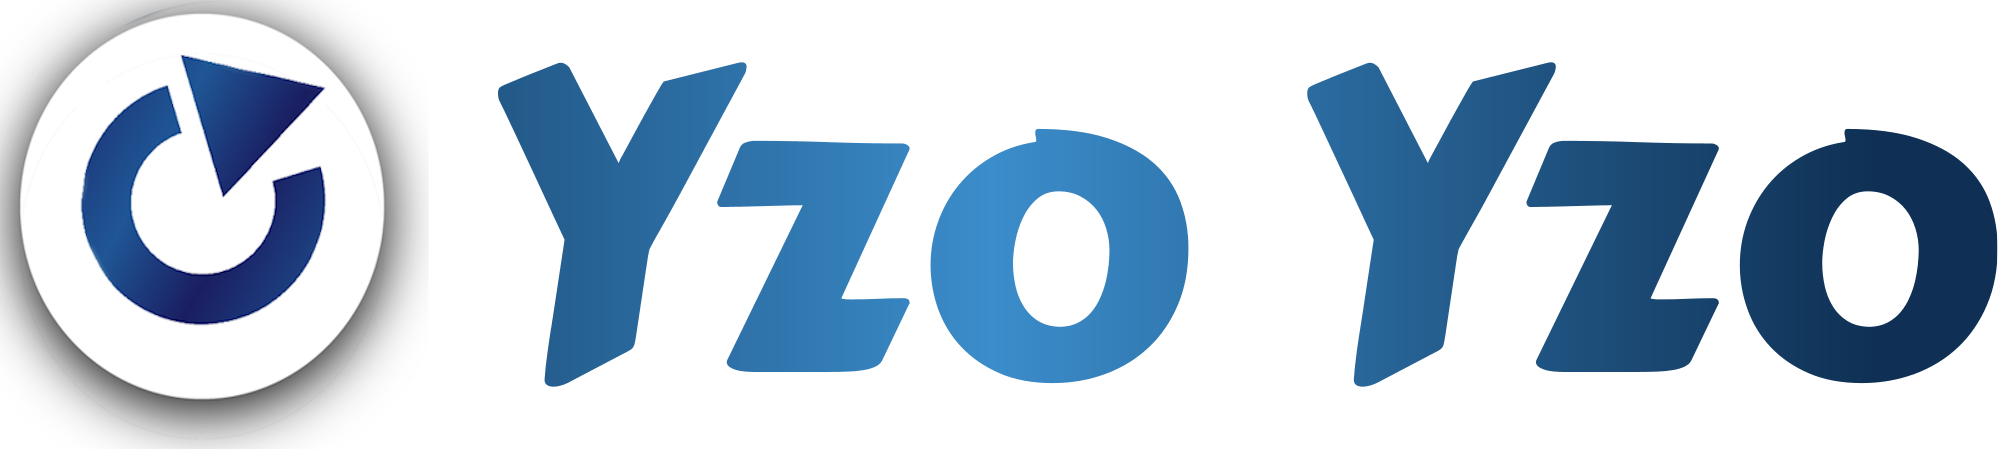 YzoYzo Logo